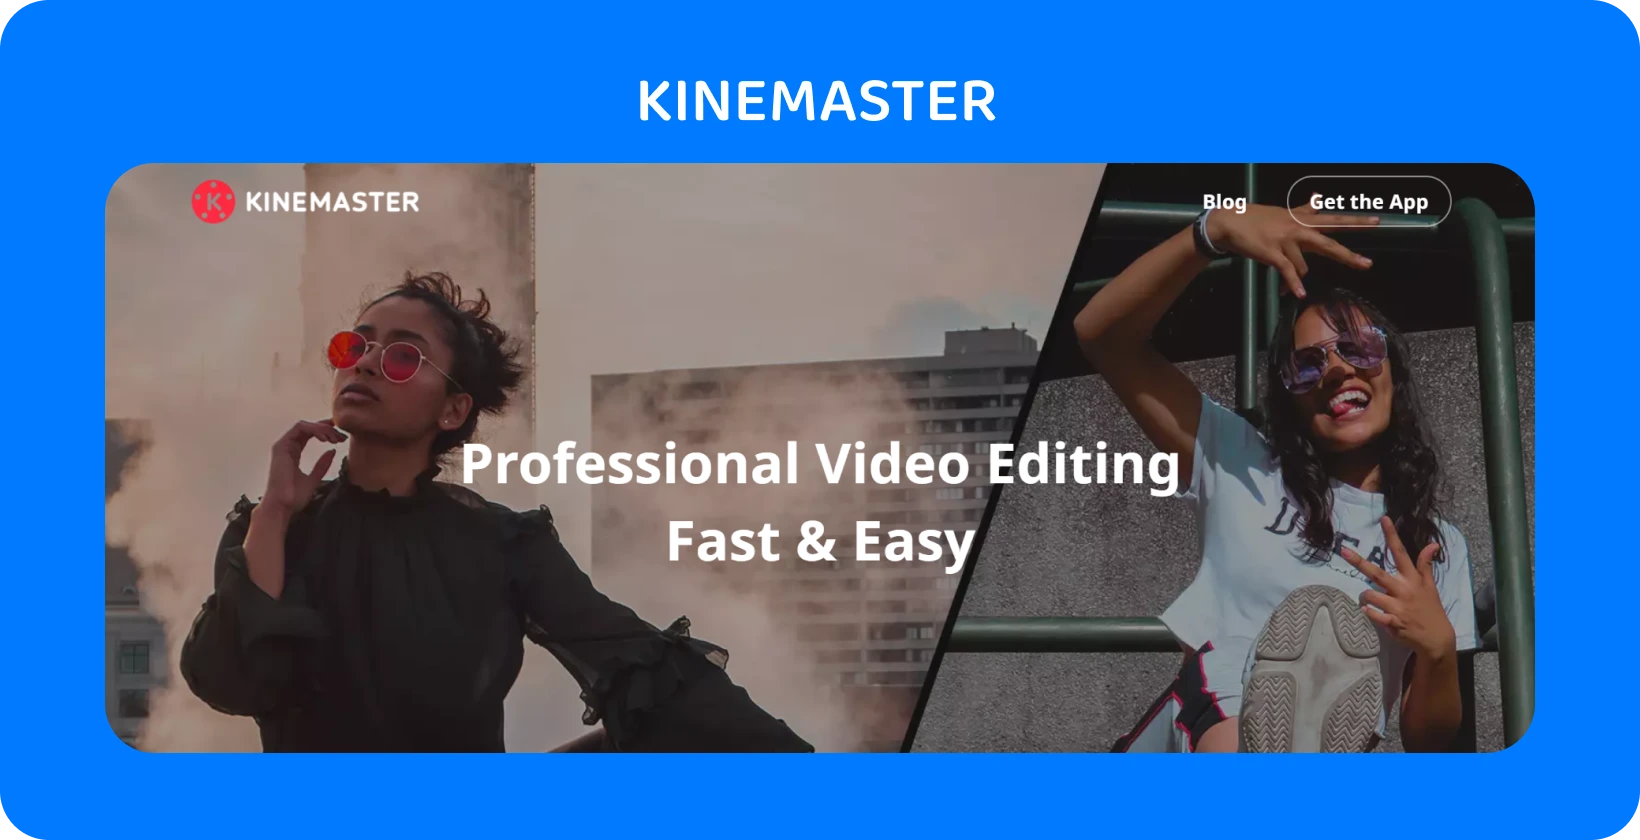 KineMaster appannonse med to modeller som poserer, og fremhever profesjonell videoredigering som er rask og enkel.